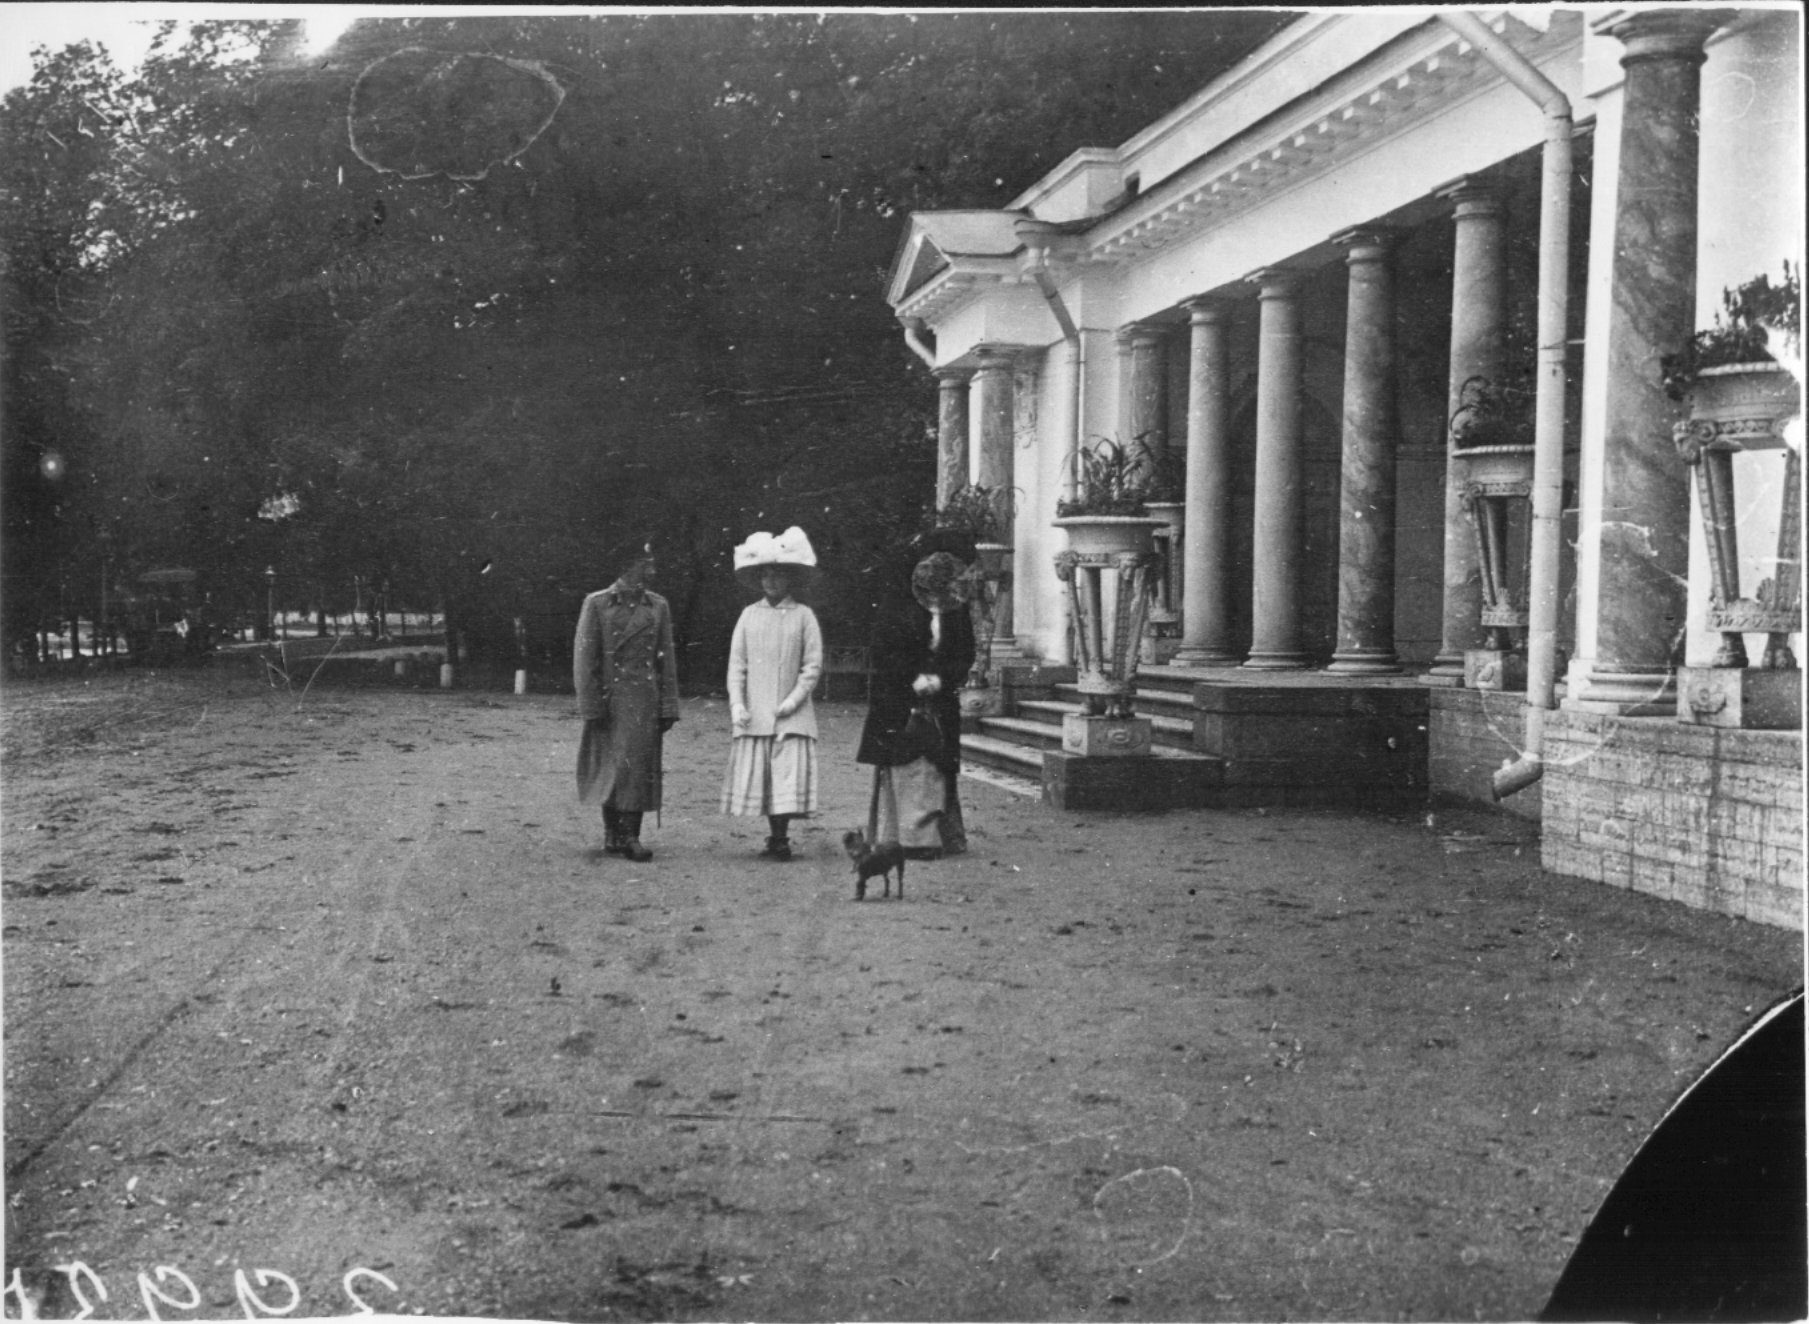 Музыкальный Павильон. Петербург, 1907 г. Фотограф К. Булла. Архив ЕОДМ.